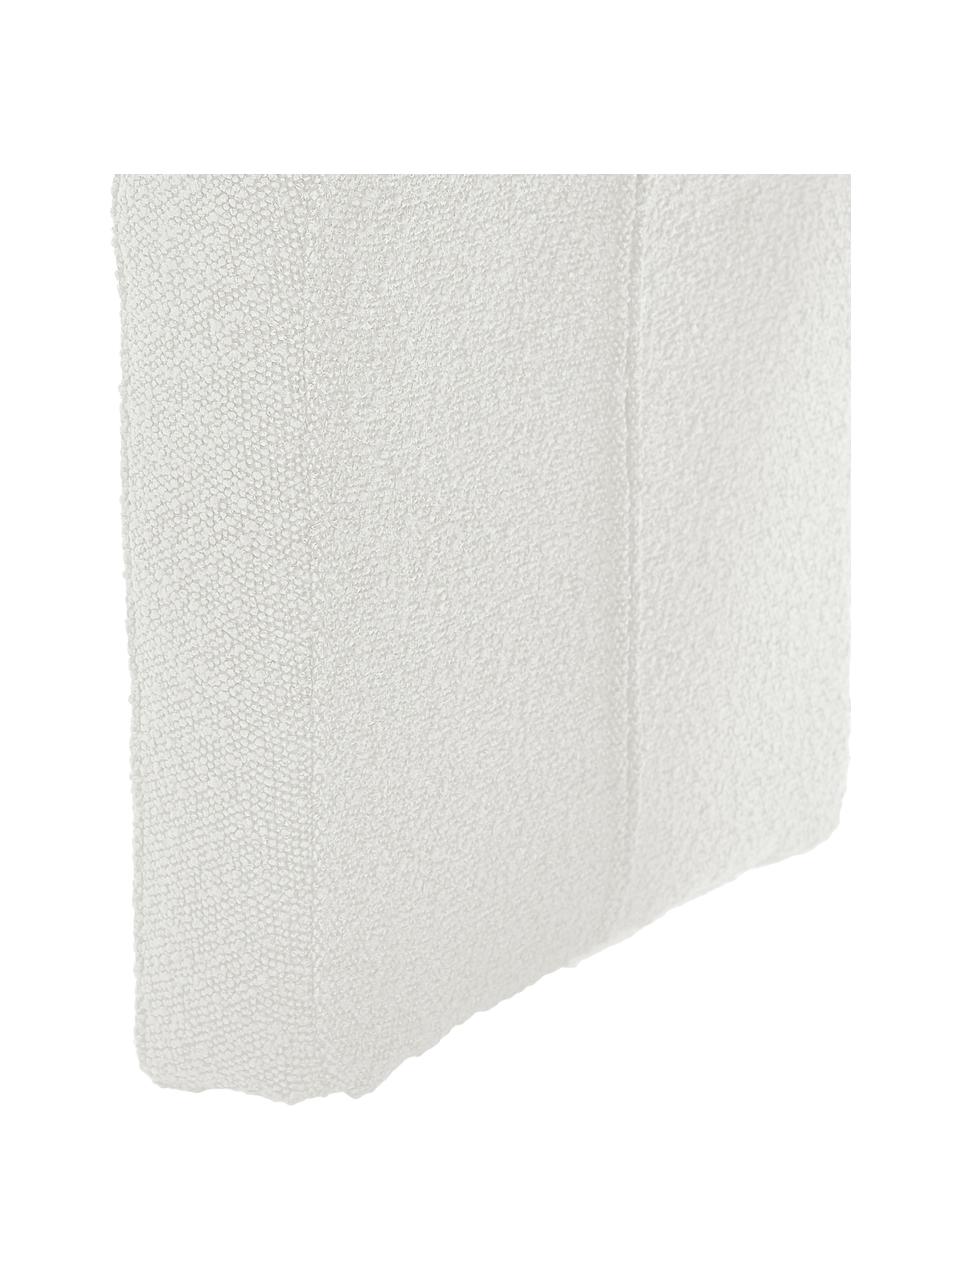 Tabouret blanc en tissu bouclé Pénélope, En tissu bouclé blanc, larg. 61 x haut. 46 cm